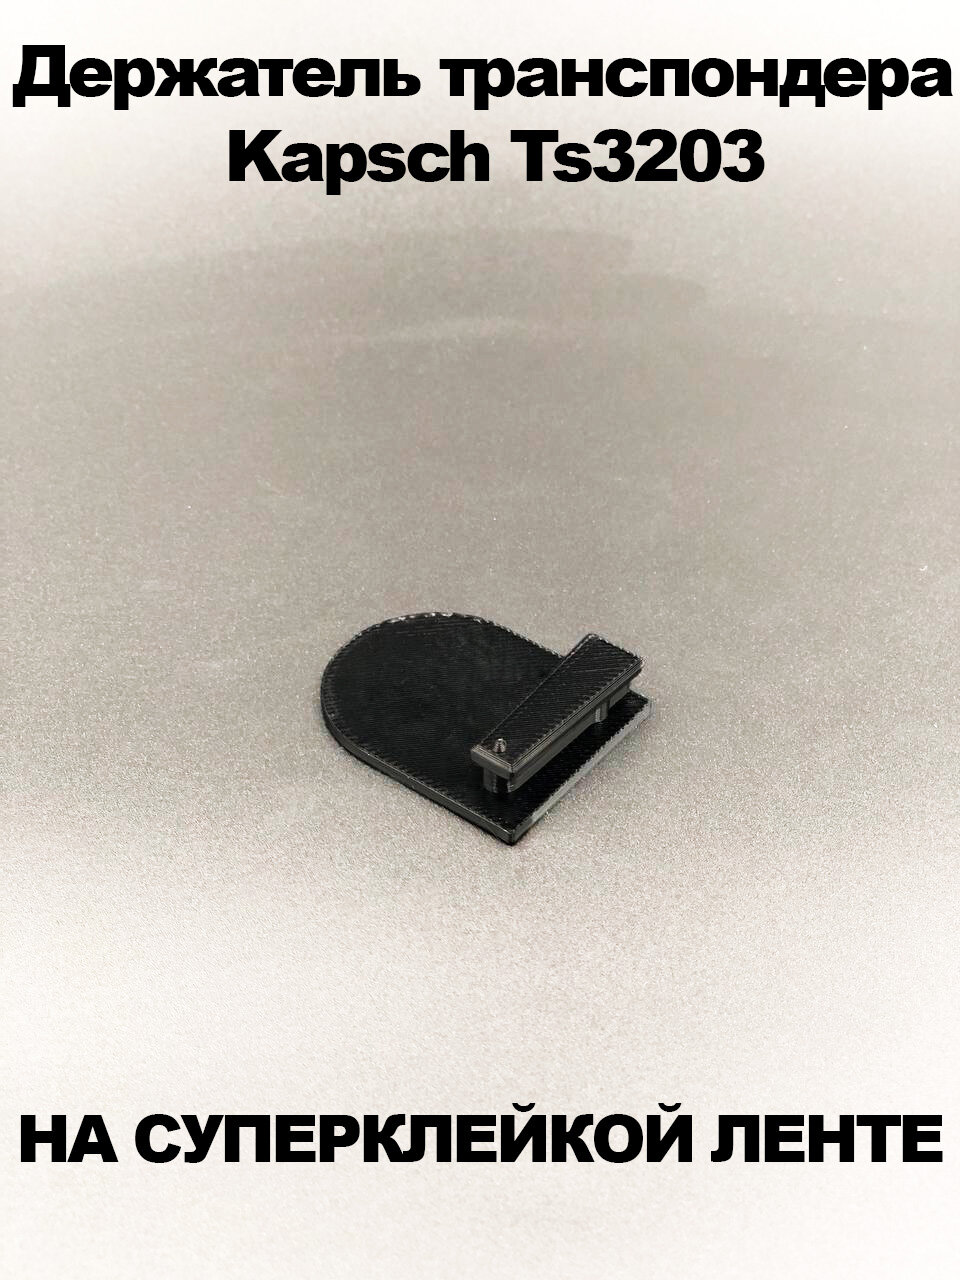 Держатель транспондера Kapsch Ts3203 черный на клейкой ленте